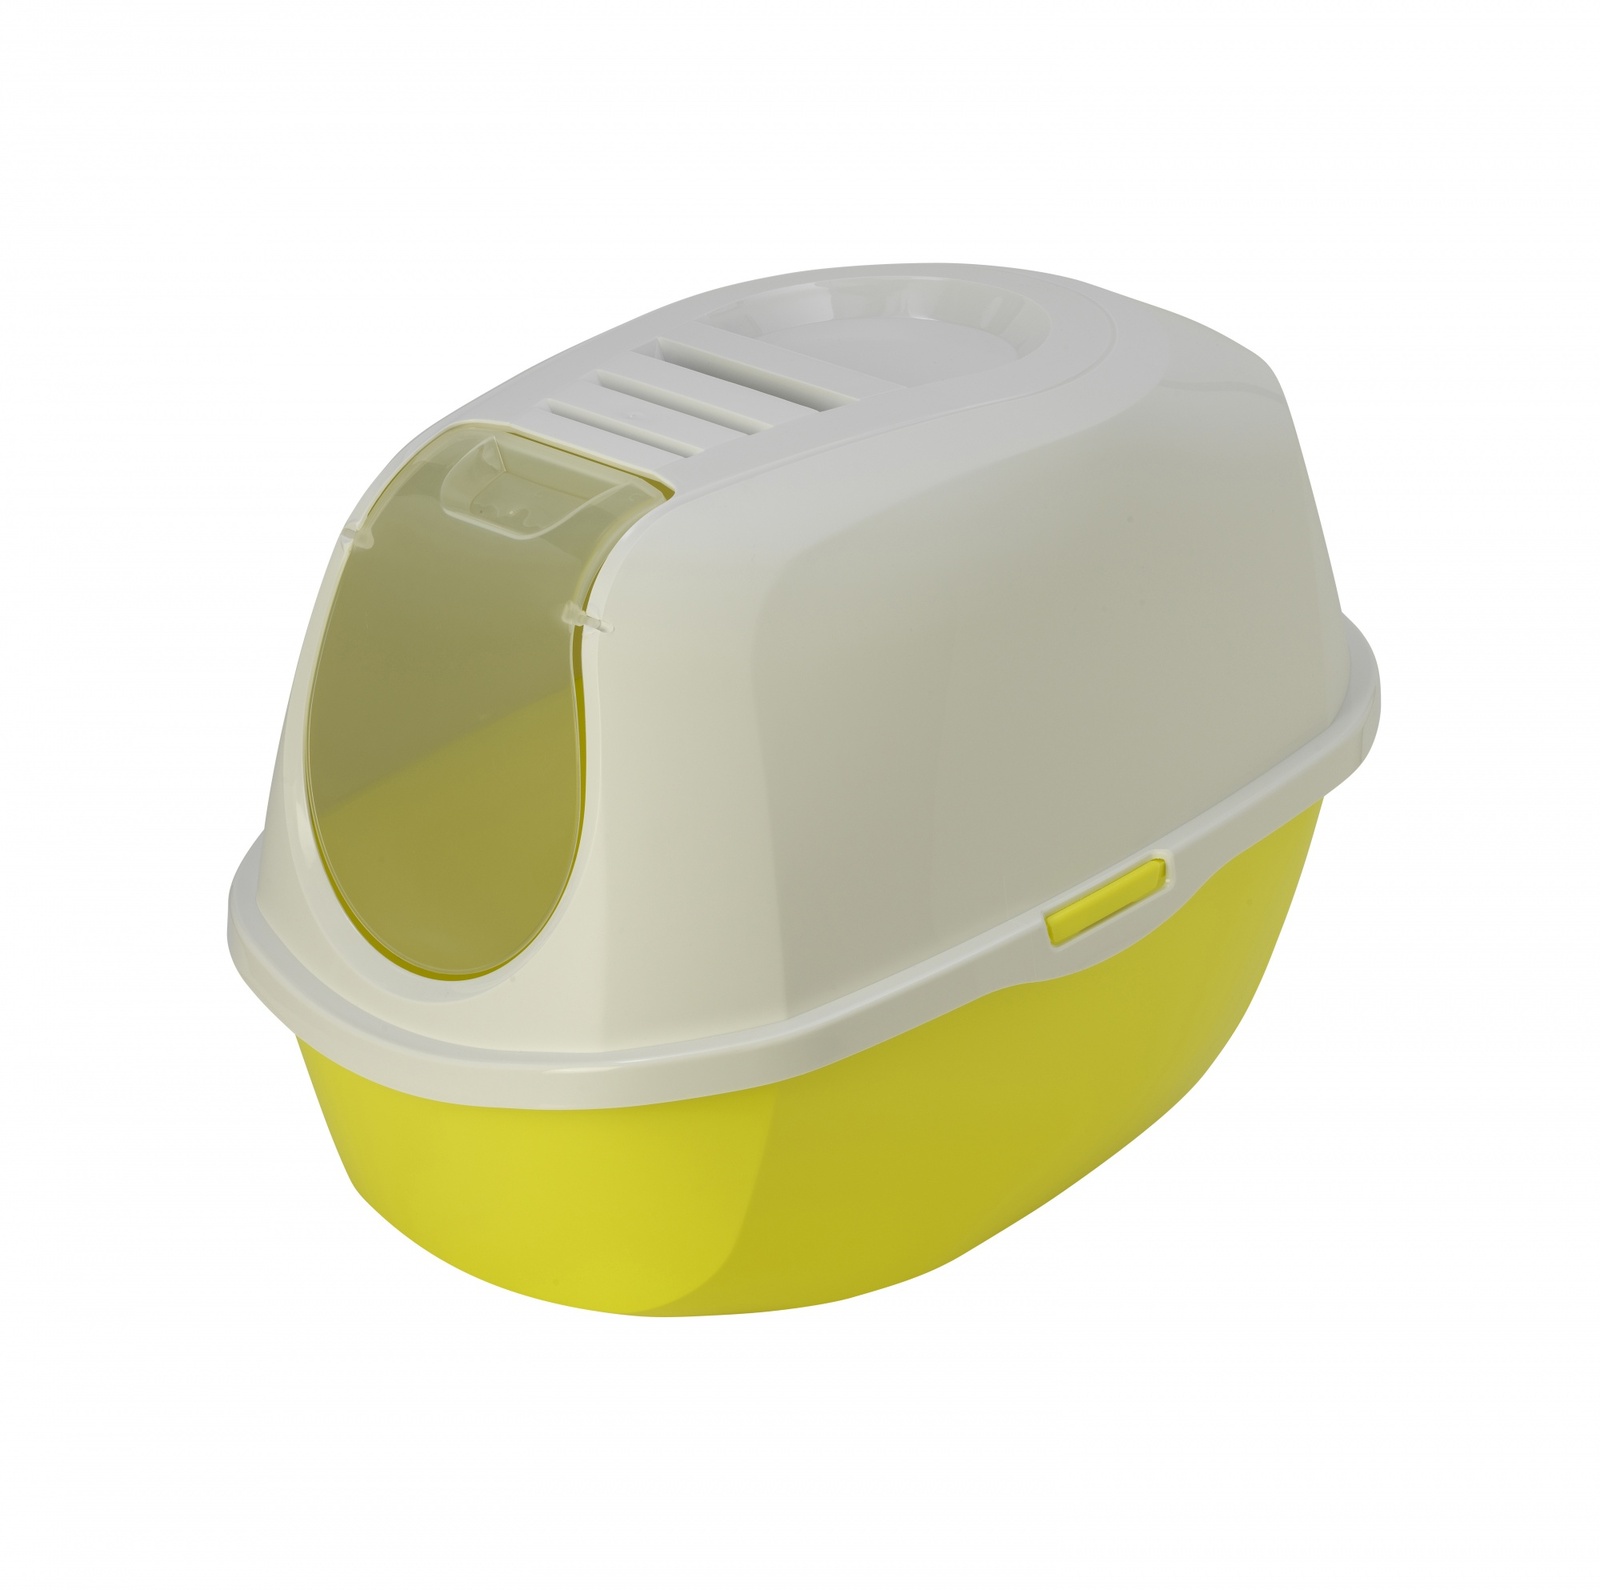 Moderna Moderna туалет-домик SmartCat с угольным фильтром, 54х40х41см, лимонно-желтый (1,2 кг) moderna moderna совок ковш 15 42x13 2x12 9 см лимонно желтый 40 г